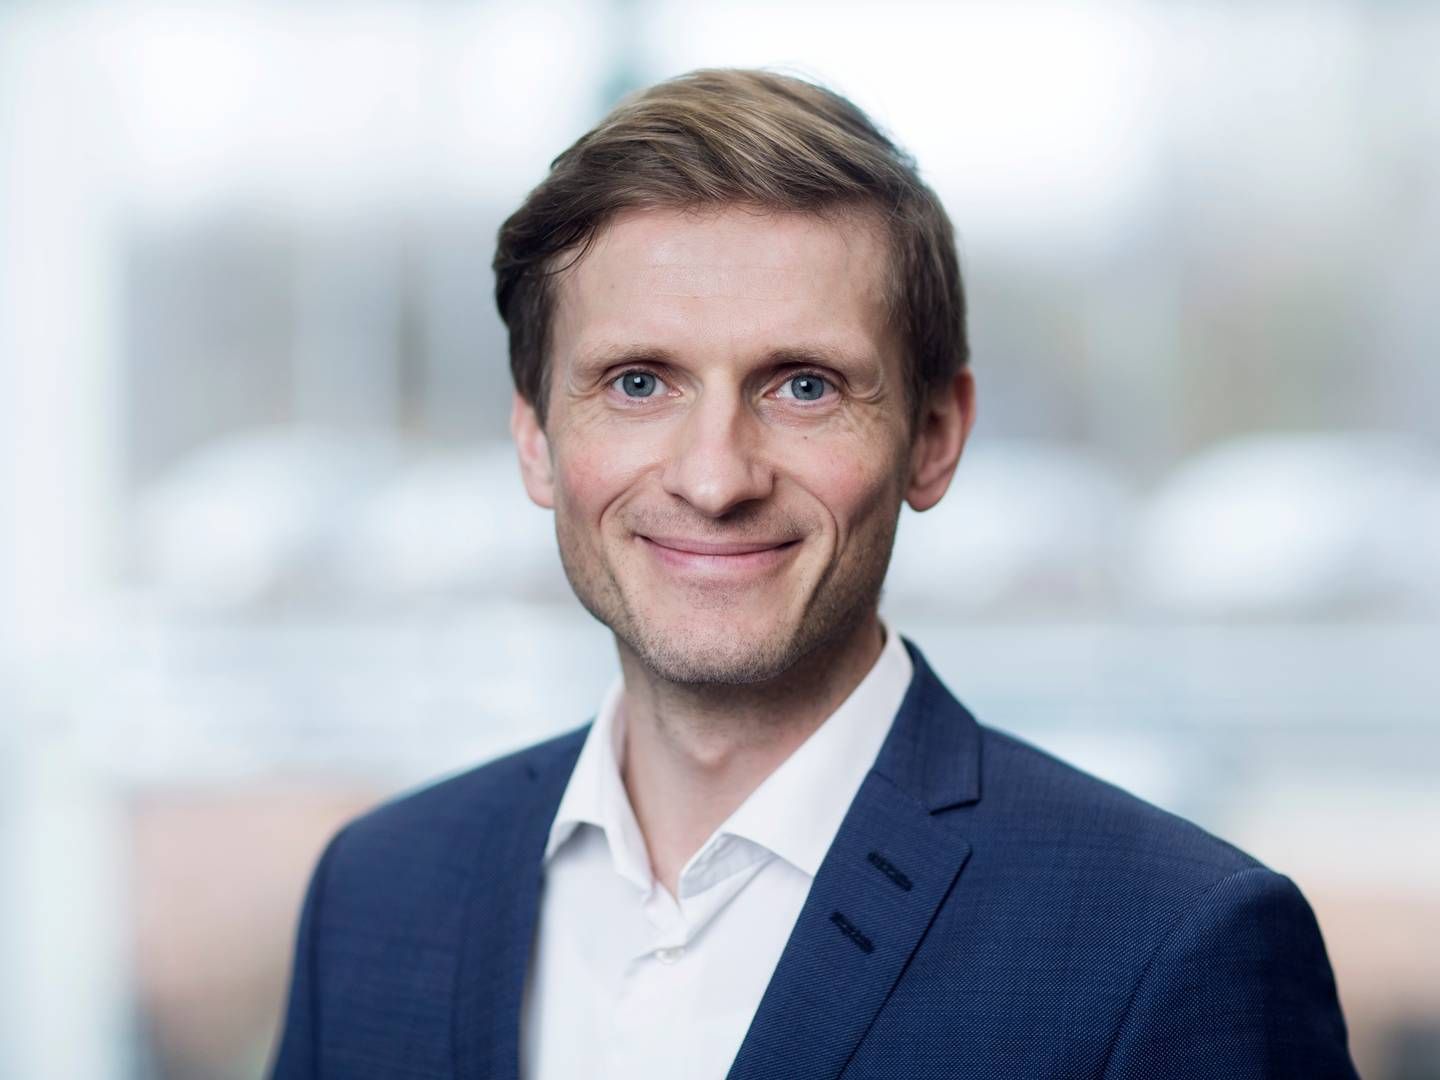 Christian Kjær, head of liquid markets at ATP. | Photo: Pr/atp